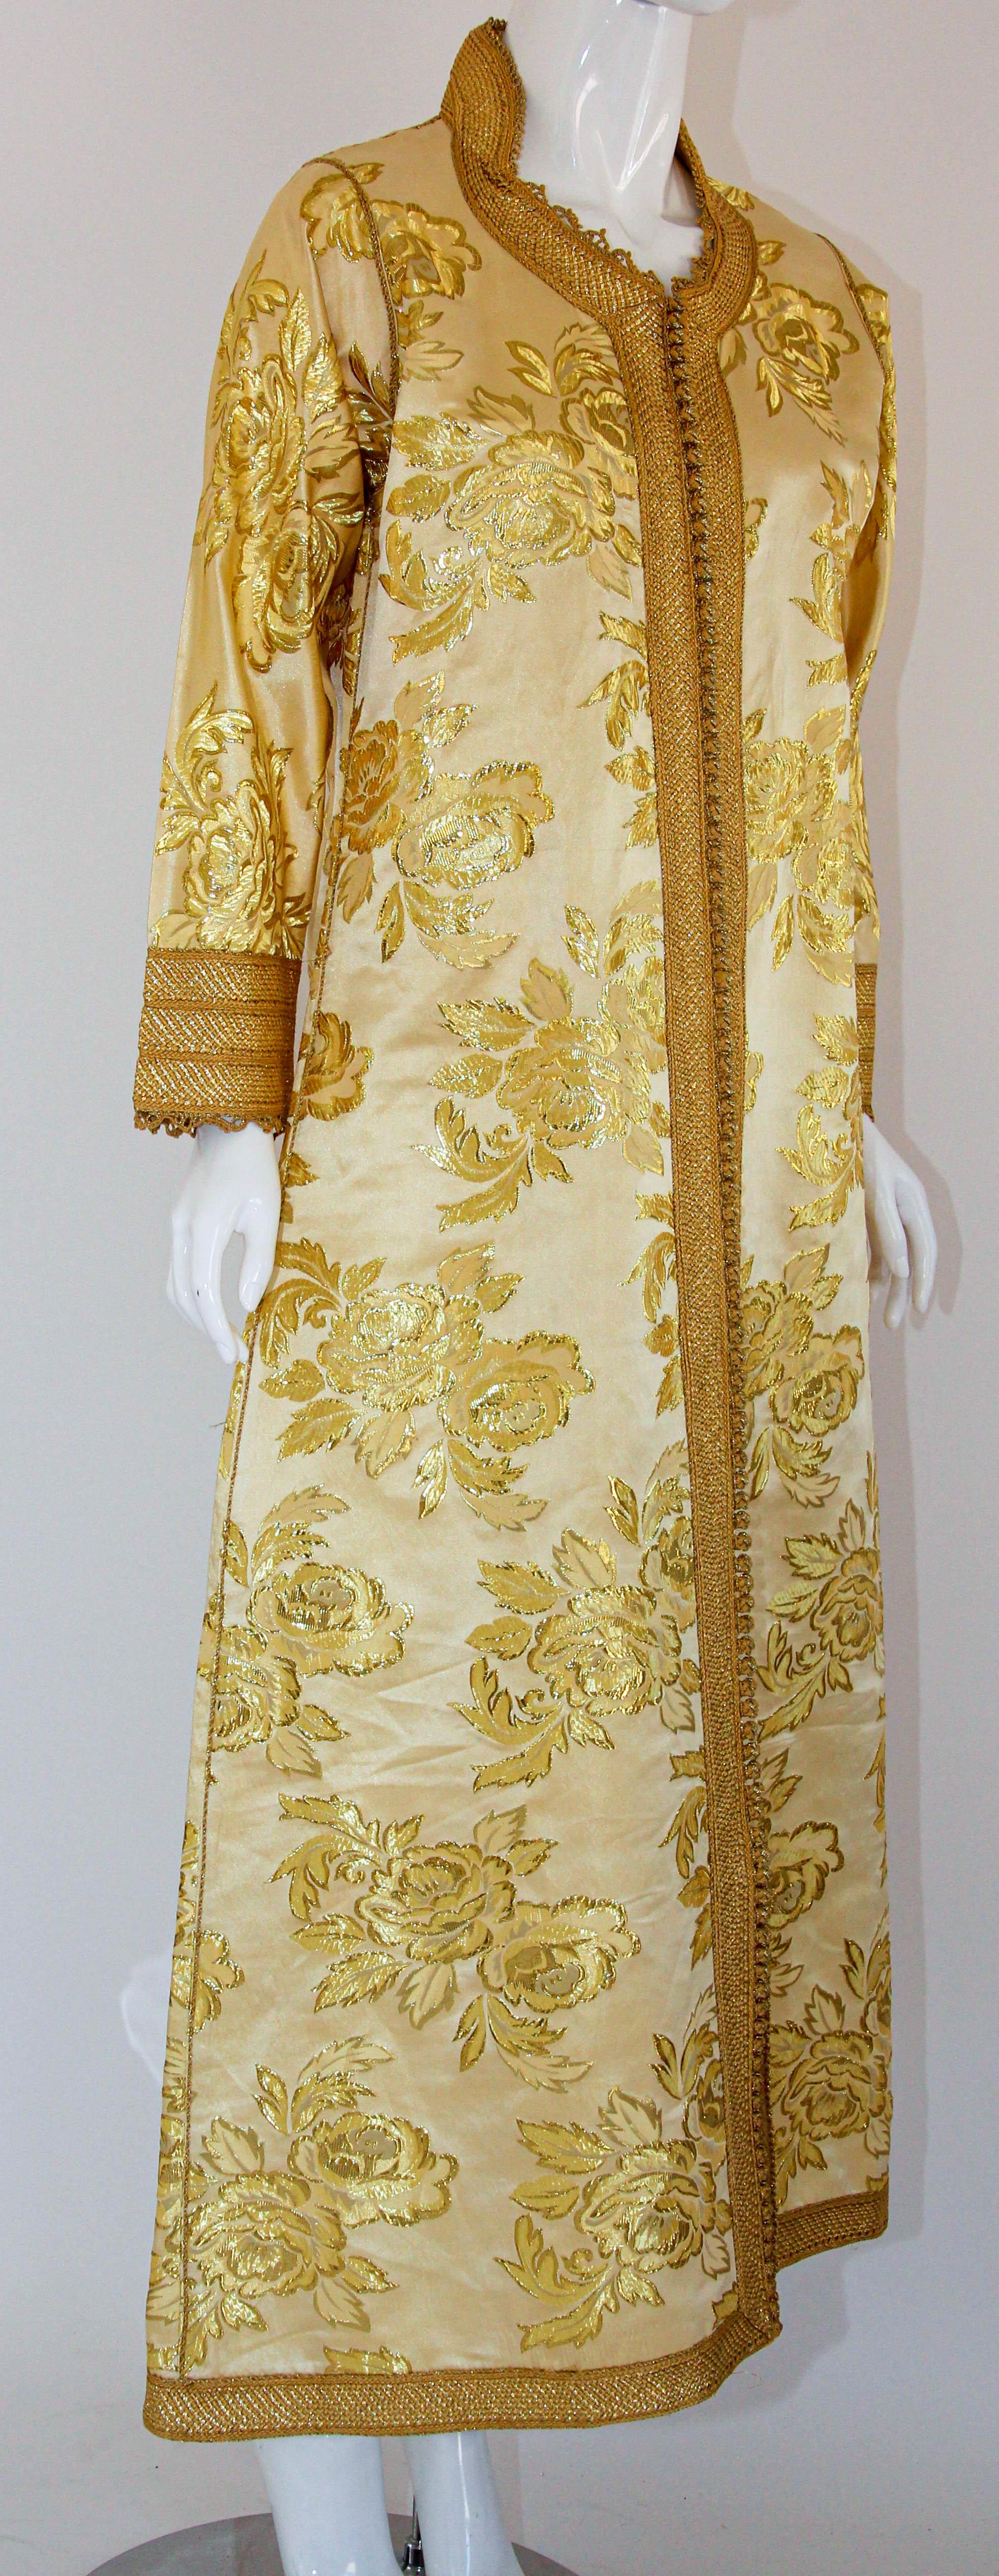 Robe kaftan vintage des années 1970 en brocart métallisé doré avec garnitures dorées.
Caftan de cérémonie fabriqué à la main en Afrique du Nord, au Maroc.
Robe caftan vintage exotique des années 1970 en damas doré et brocart métallique.
La robe maxi